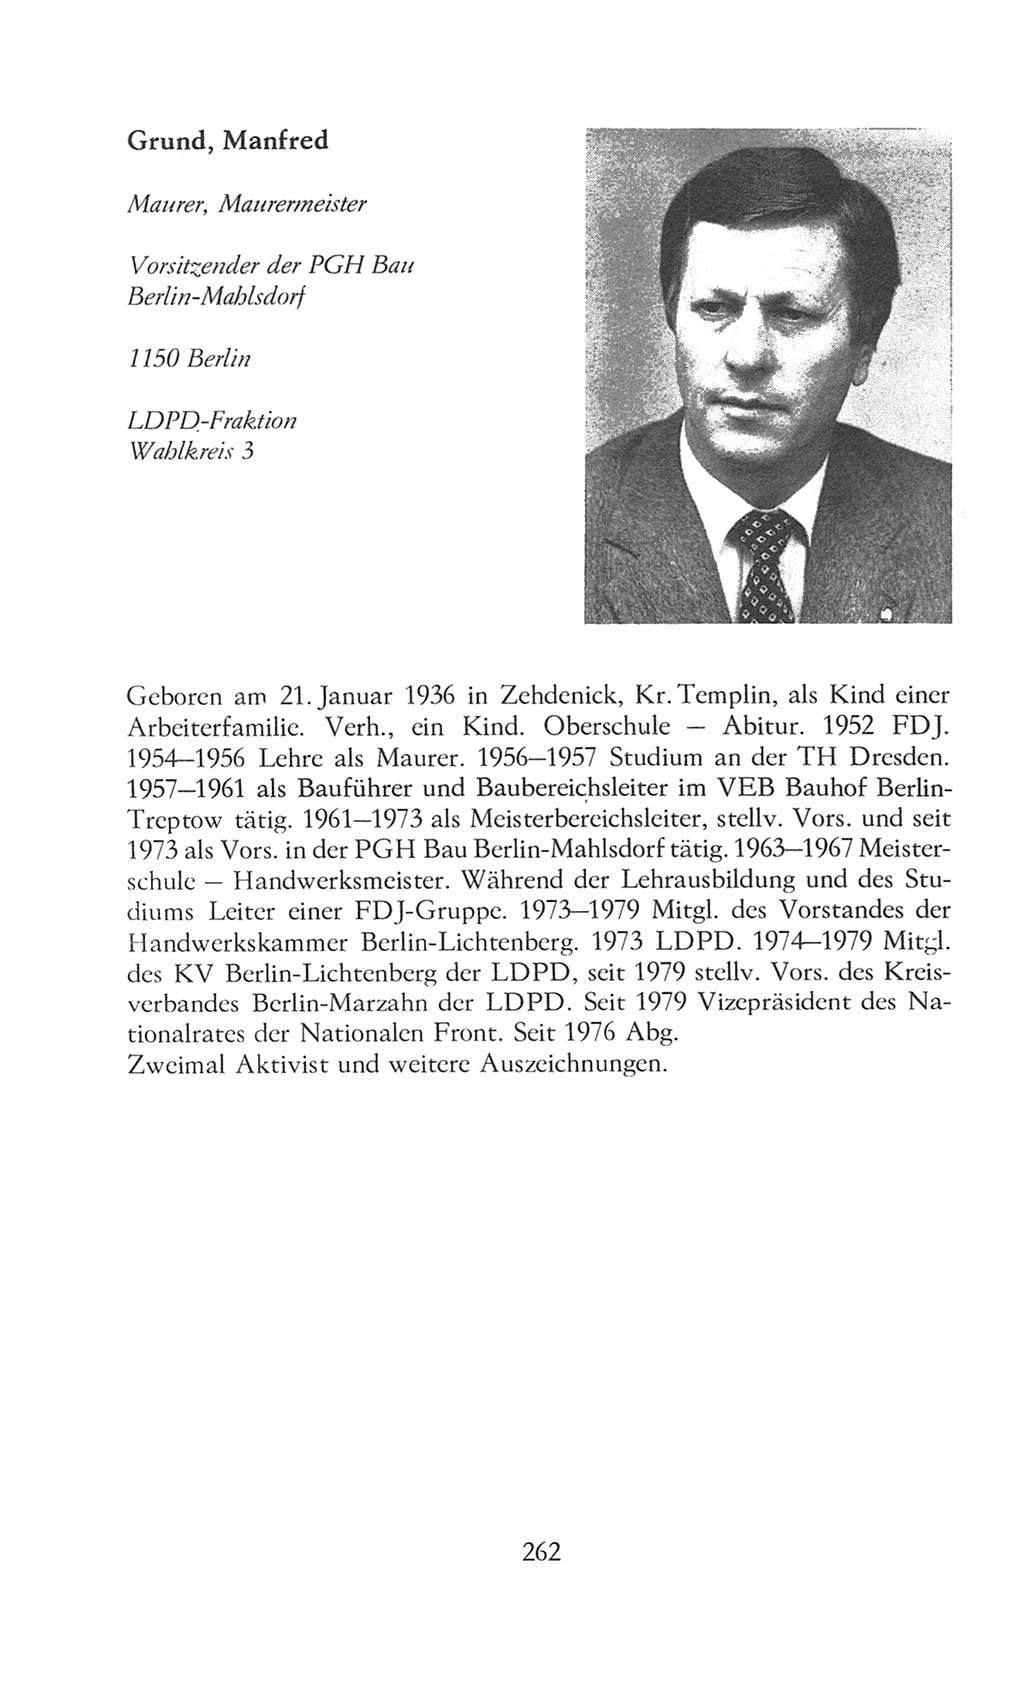 Volkskammer (VK) der Deutschen Demokratischen Republik (DDR), 8. Wahlperiode 1981-1986, Seite 262 (VK. DDR 8. WP. 1981-1986, S. 262)